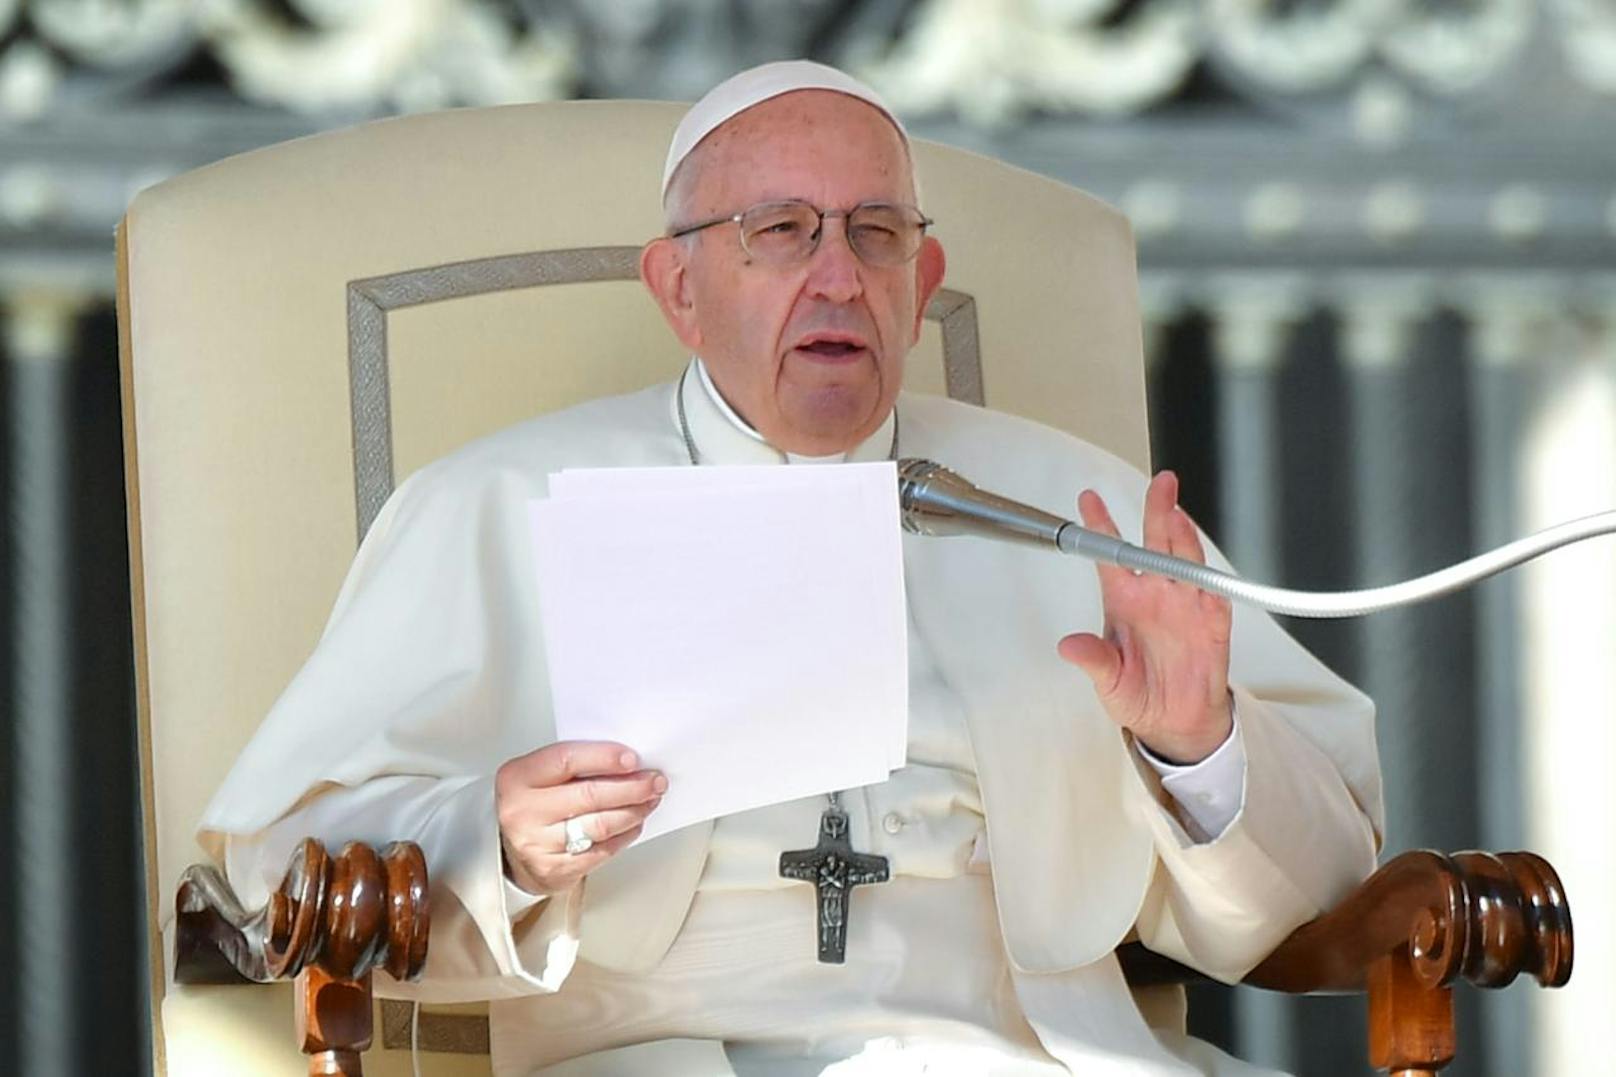 "Einen Menschen zu beseitigen ist wie die Inanspruchnahme eines Auftragsmörders, um ein Problem zu lösen", sagte Papst Franziskus